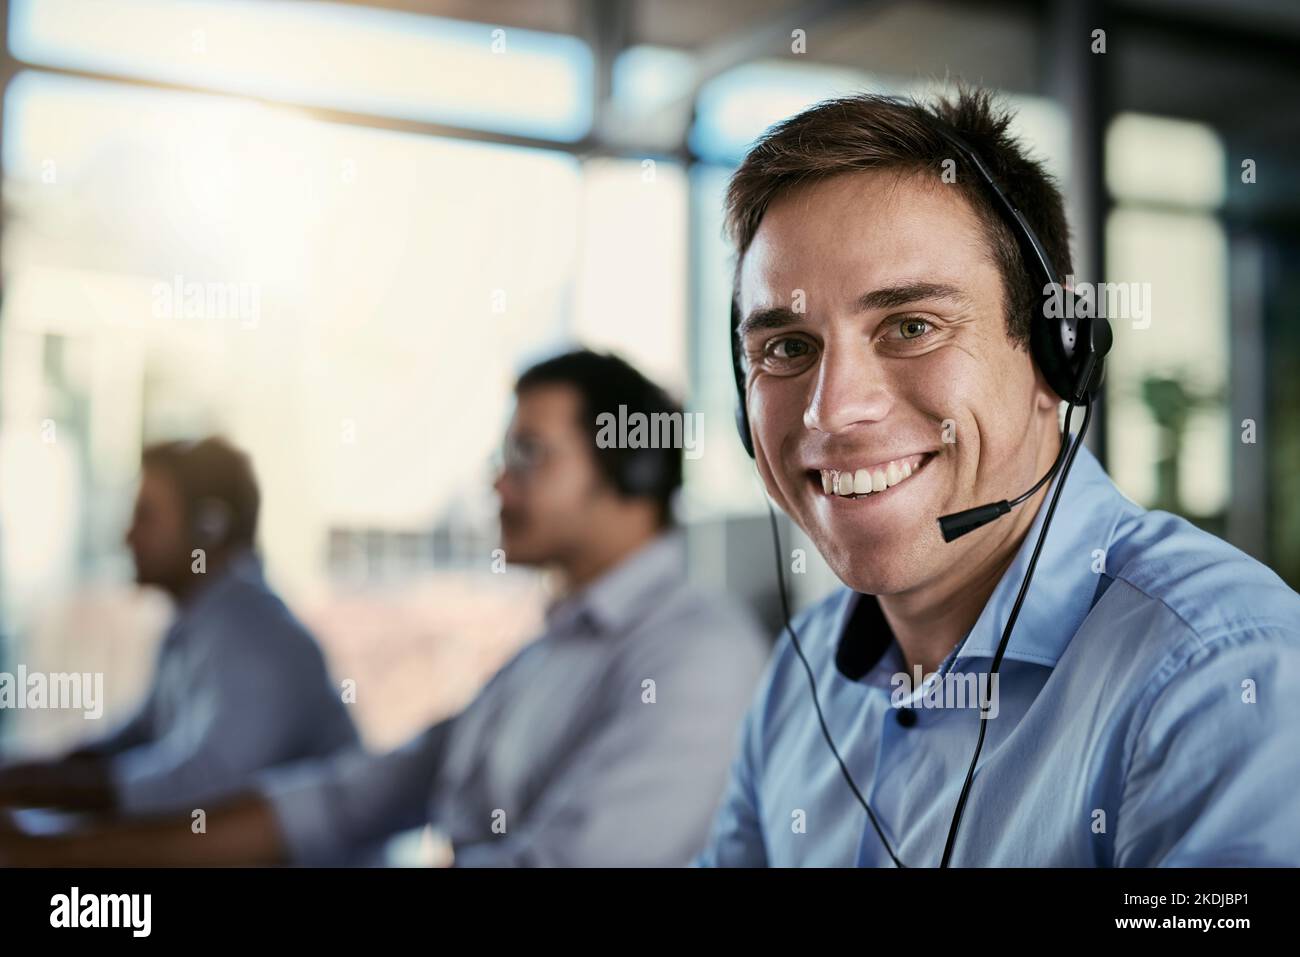 Standen zur Verfügung, um Ihren Anruf anzunehmen. Porträt eines Call Center-Agenten, der in einem Büro arbeitet, mit seinen Kollegen im Hintergrund. Stockfoto